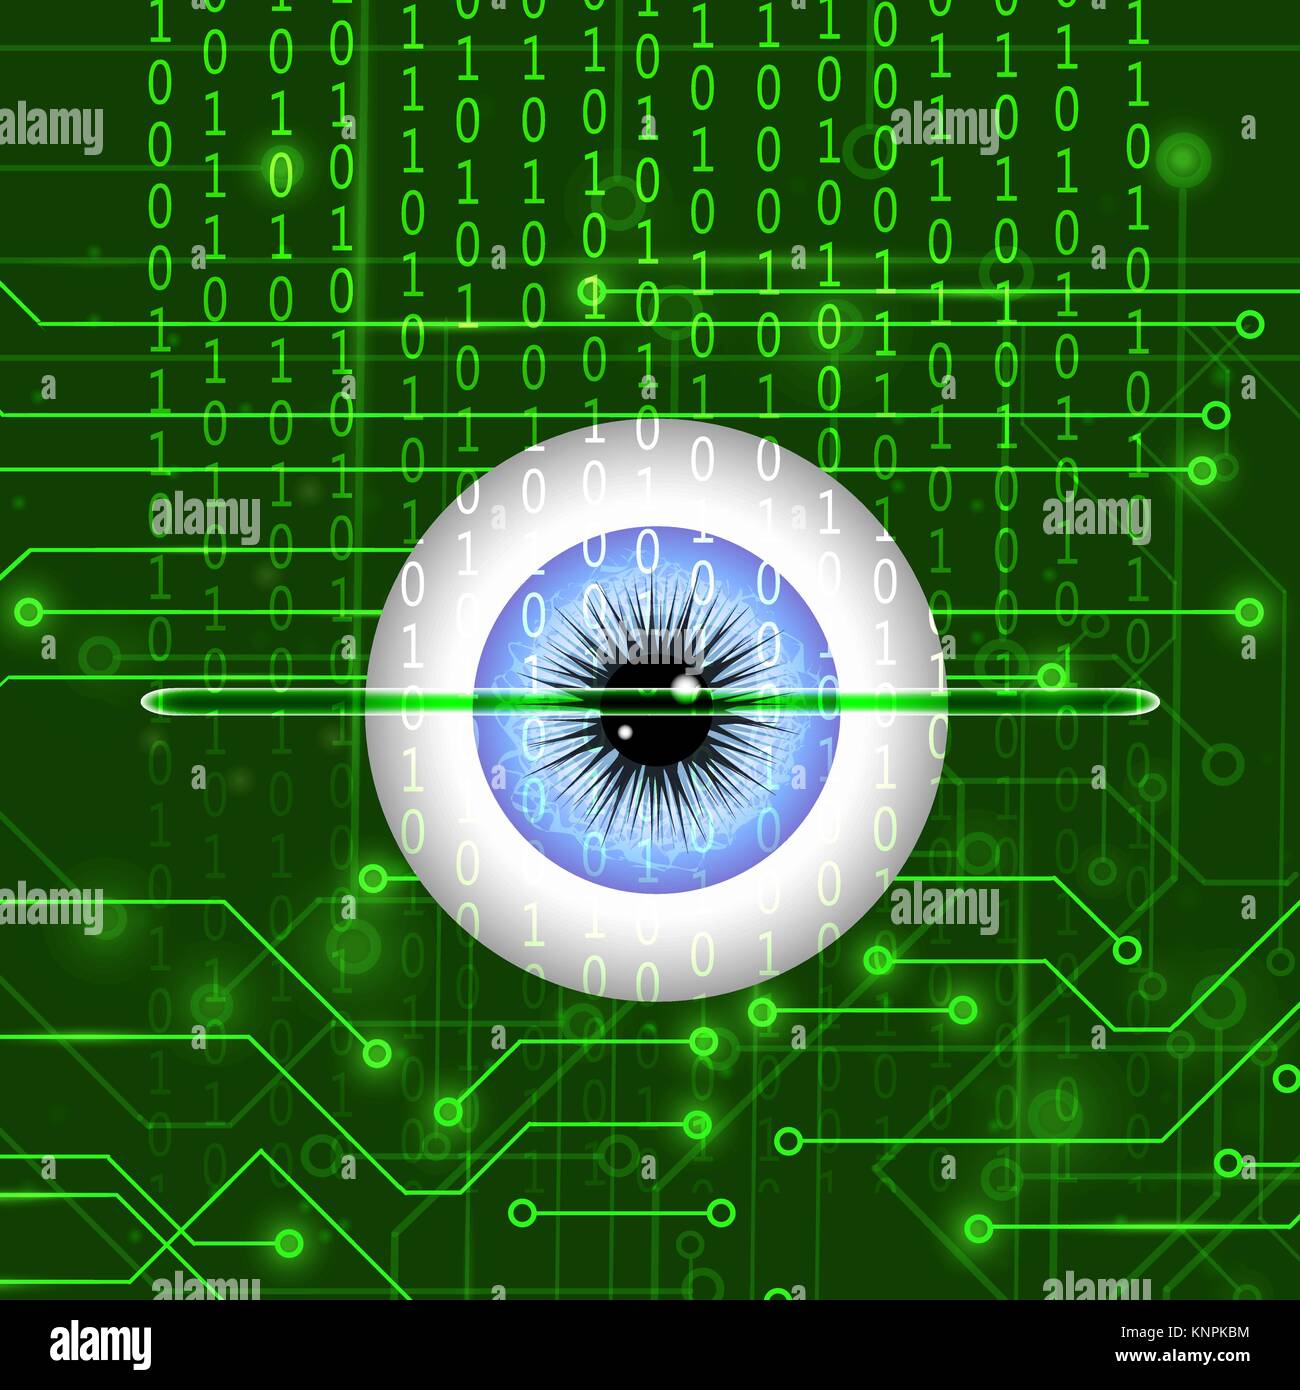 Biometrischen Identifikationssystems für Auge Stock Vektor